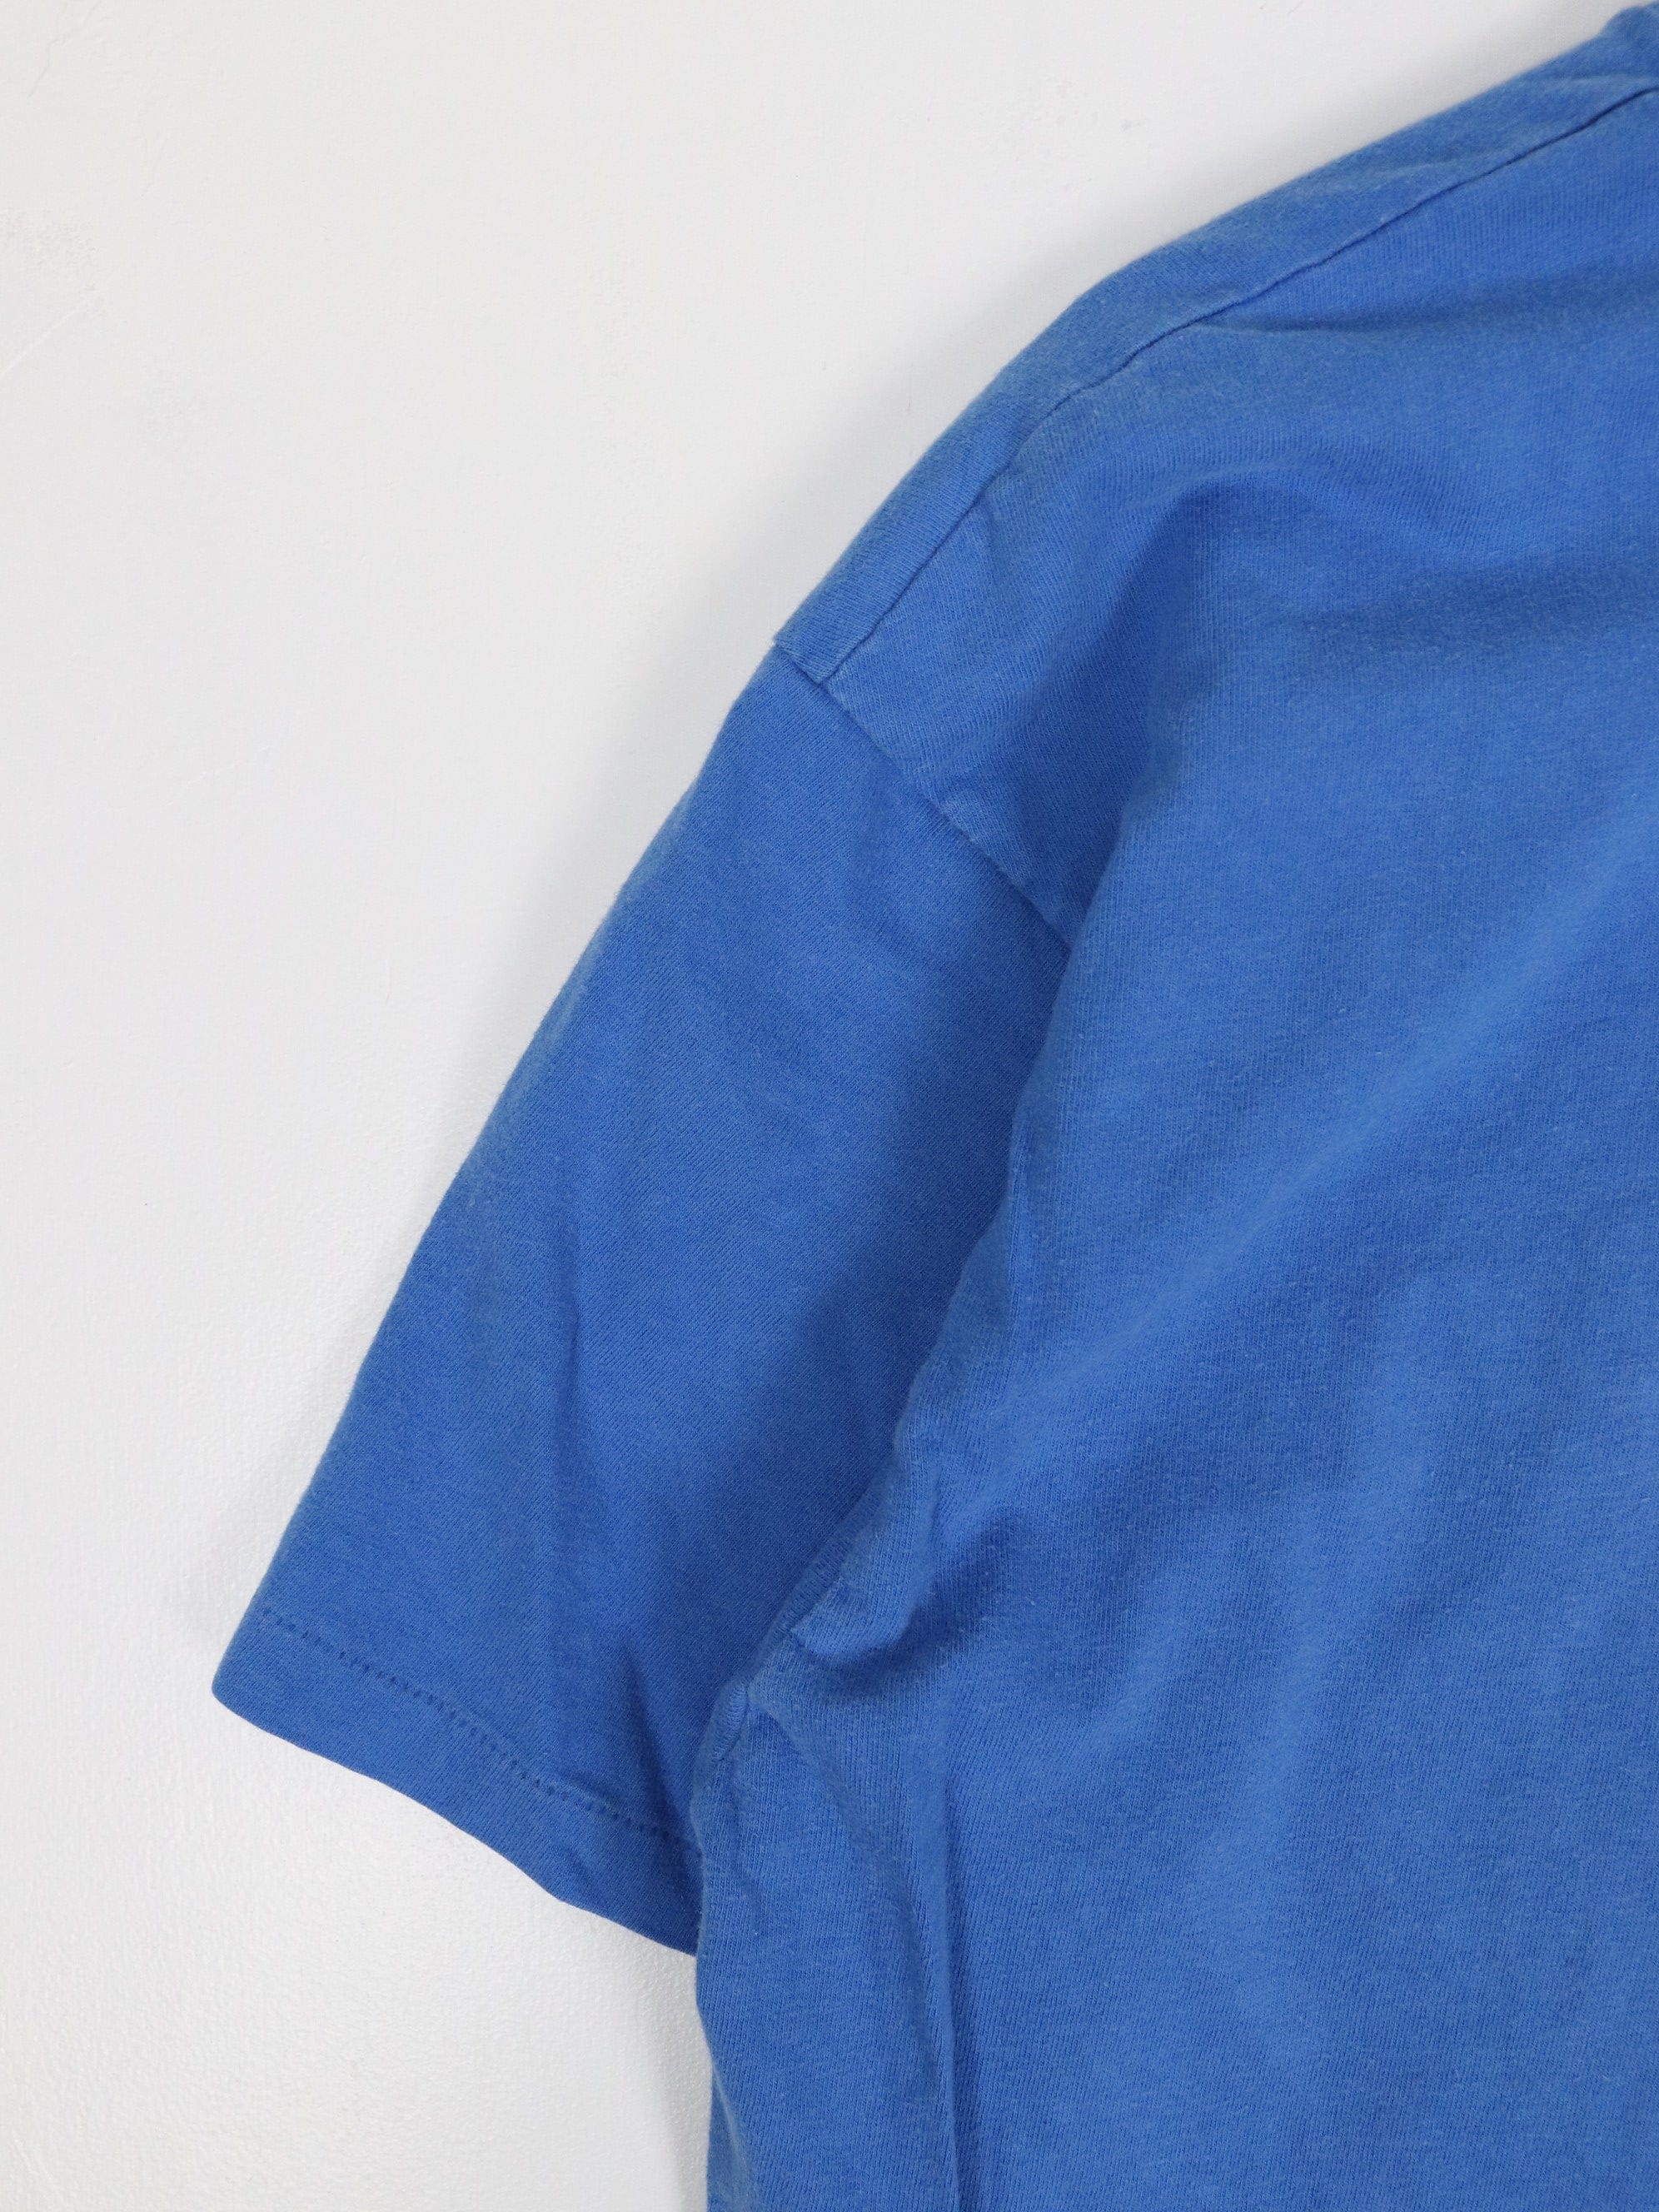 Vintage Hanes Beefy T Shirt Fits Mens Large Blue Blank Pocket 90s